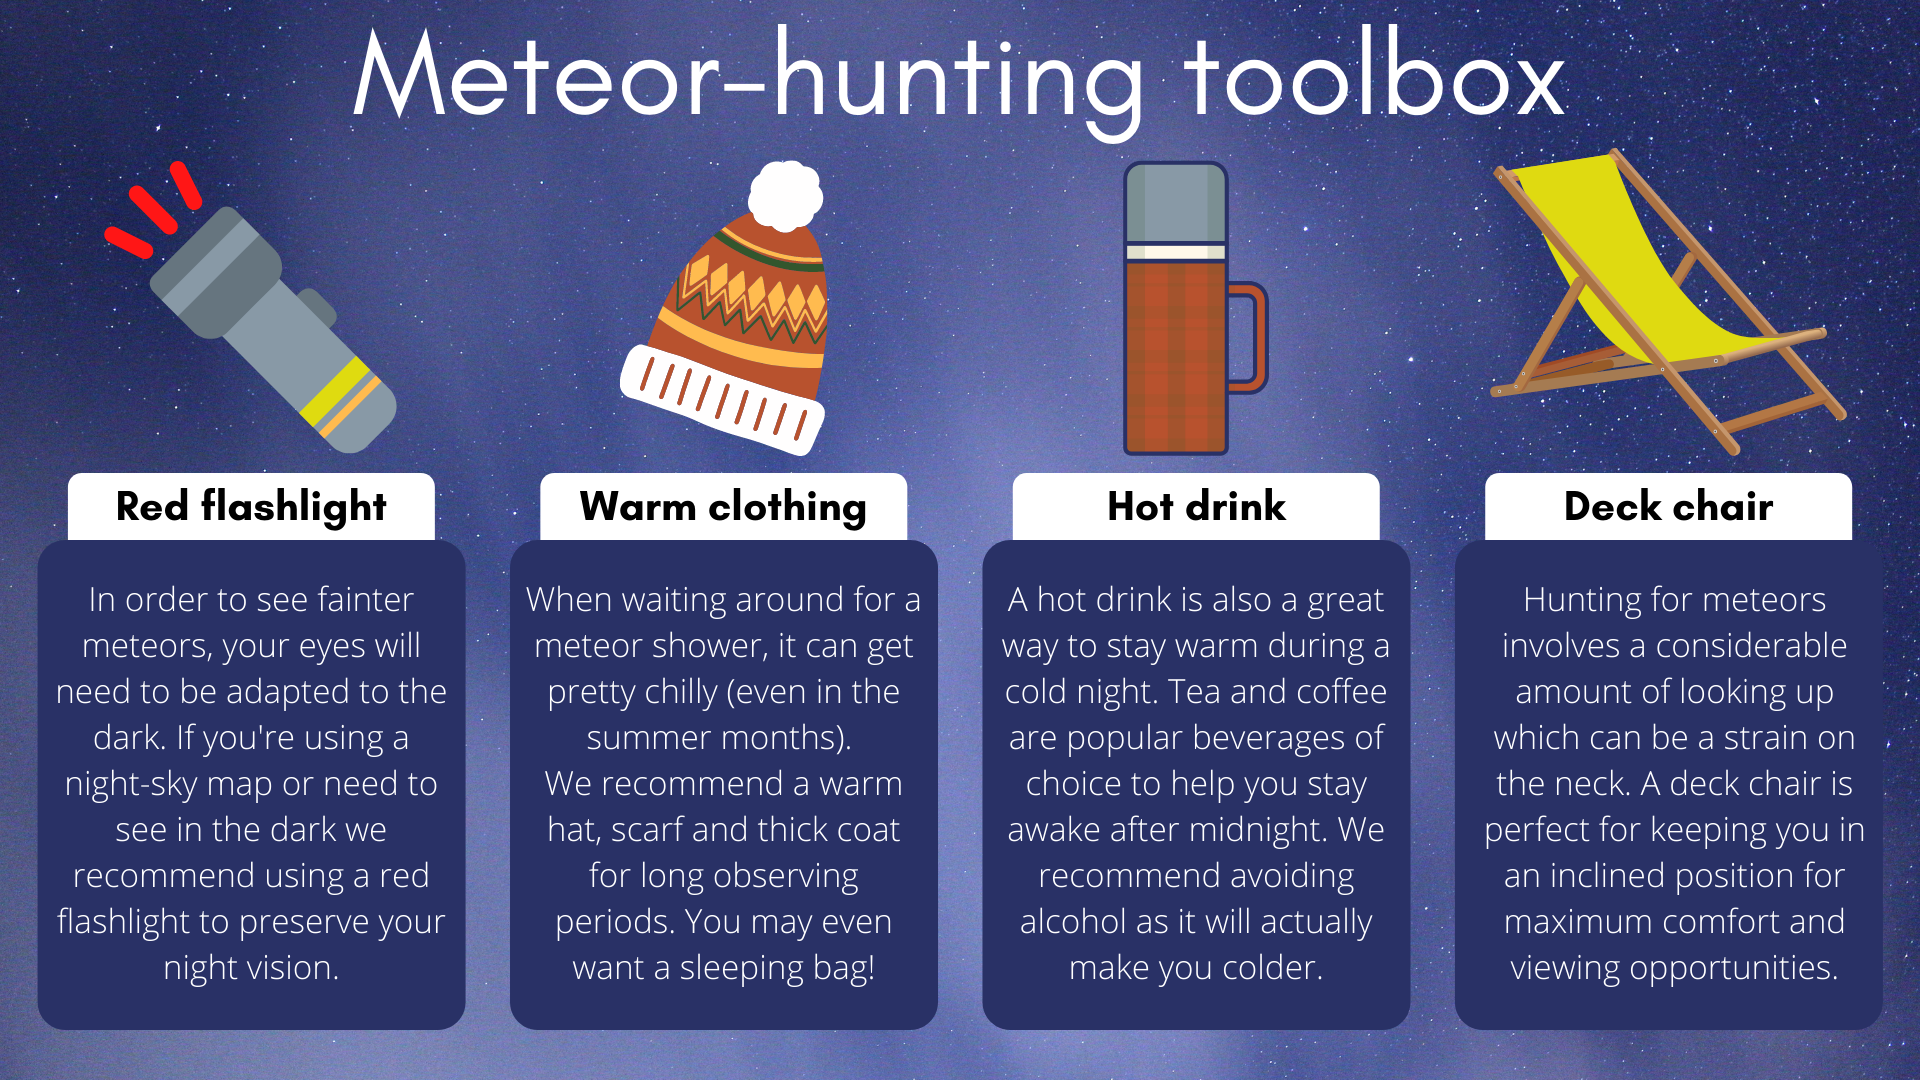 Pour une expérience de chasse aux météores idéale, vous aurez besoin d'une lampe de poche de référence, de vêtements chauds, d'une boisson chaude et d'une belle chaise longue.